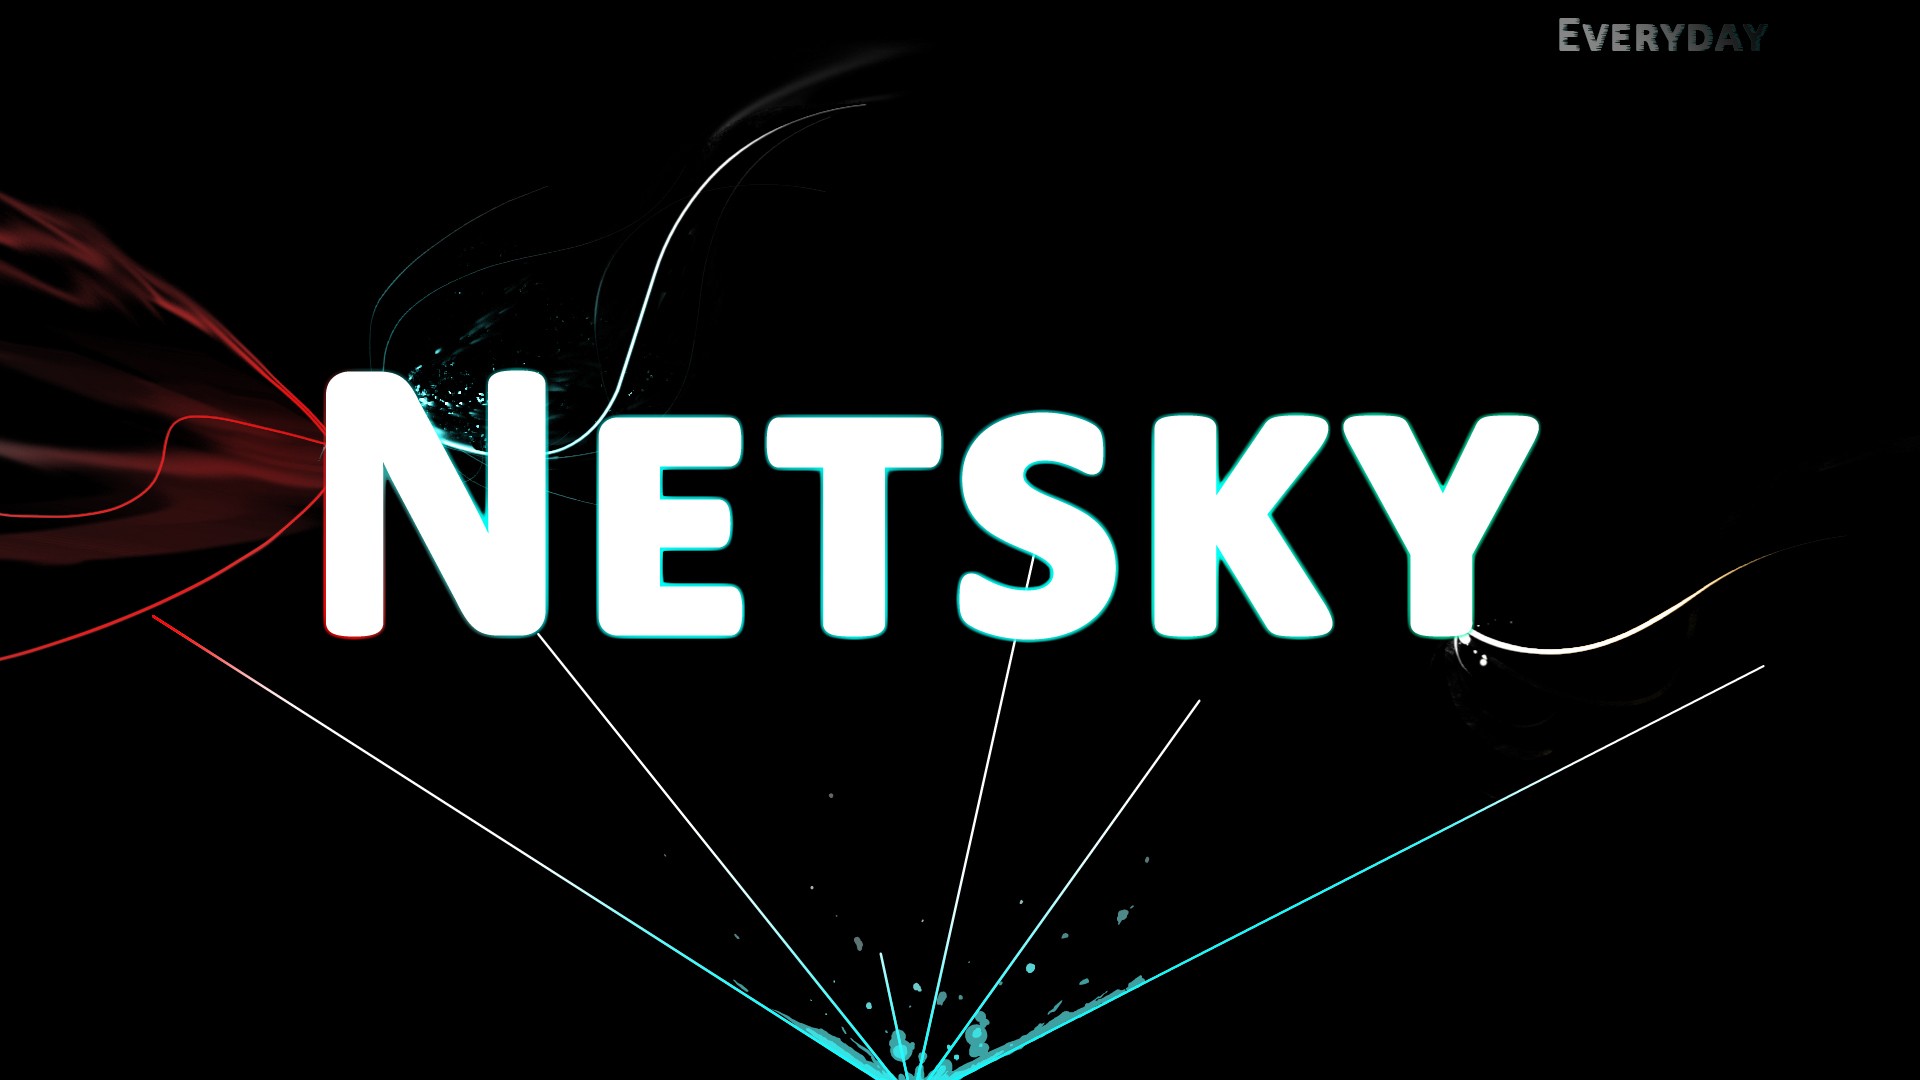 dubstep, drum and bass, Netsky - desktop wallpaper